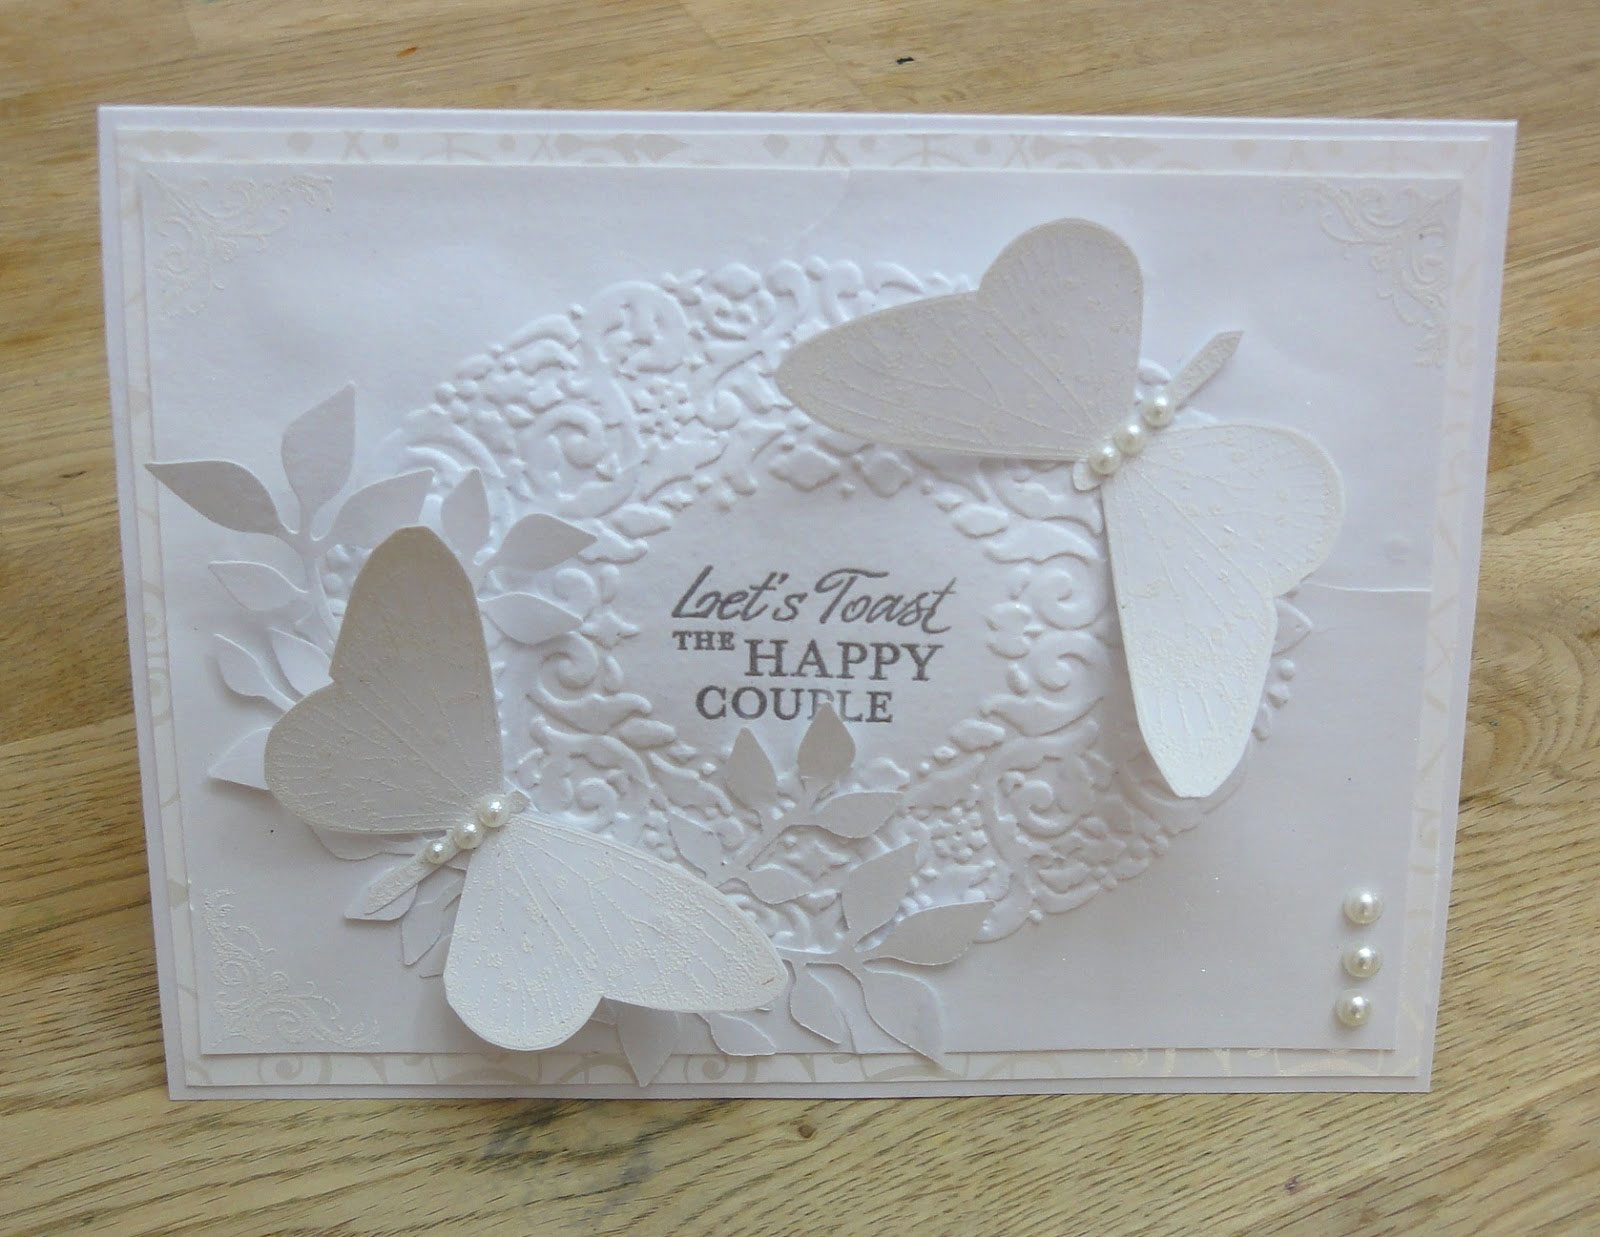 Thiệp cưới đẹp màu trắng hoa văn con bướm nổi